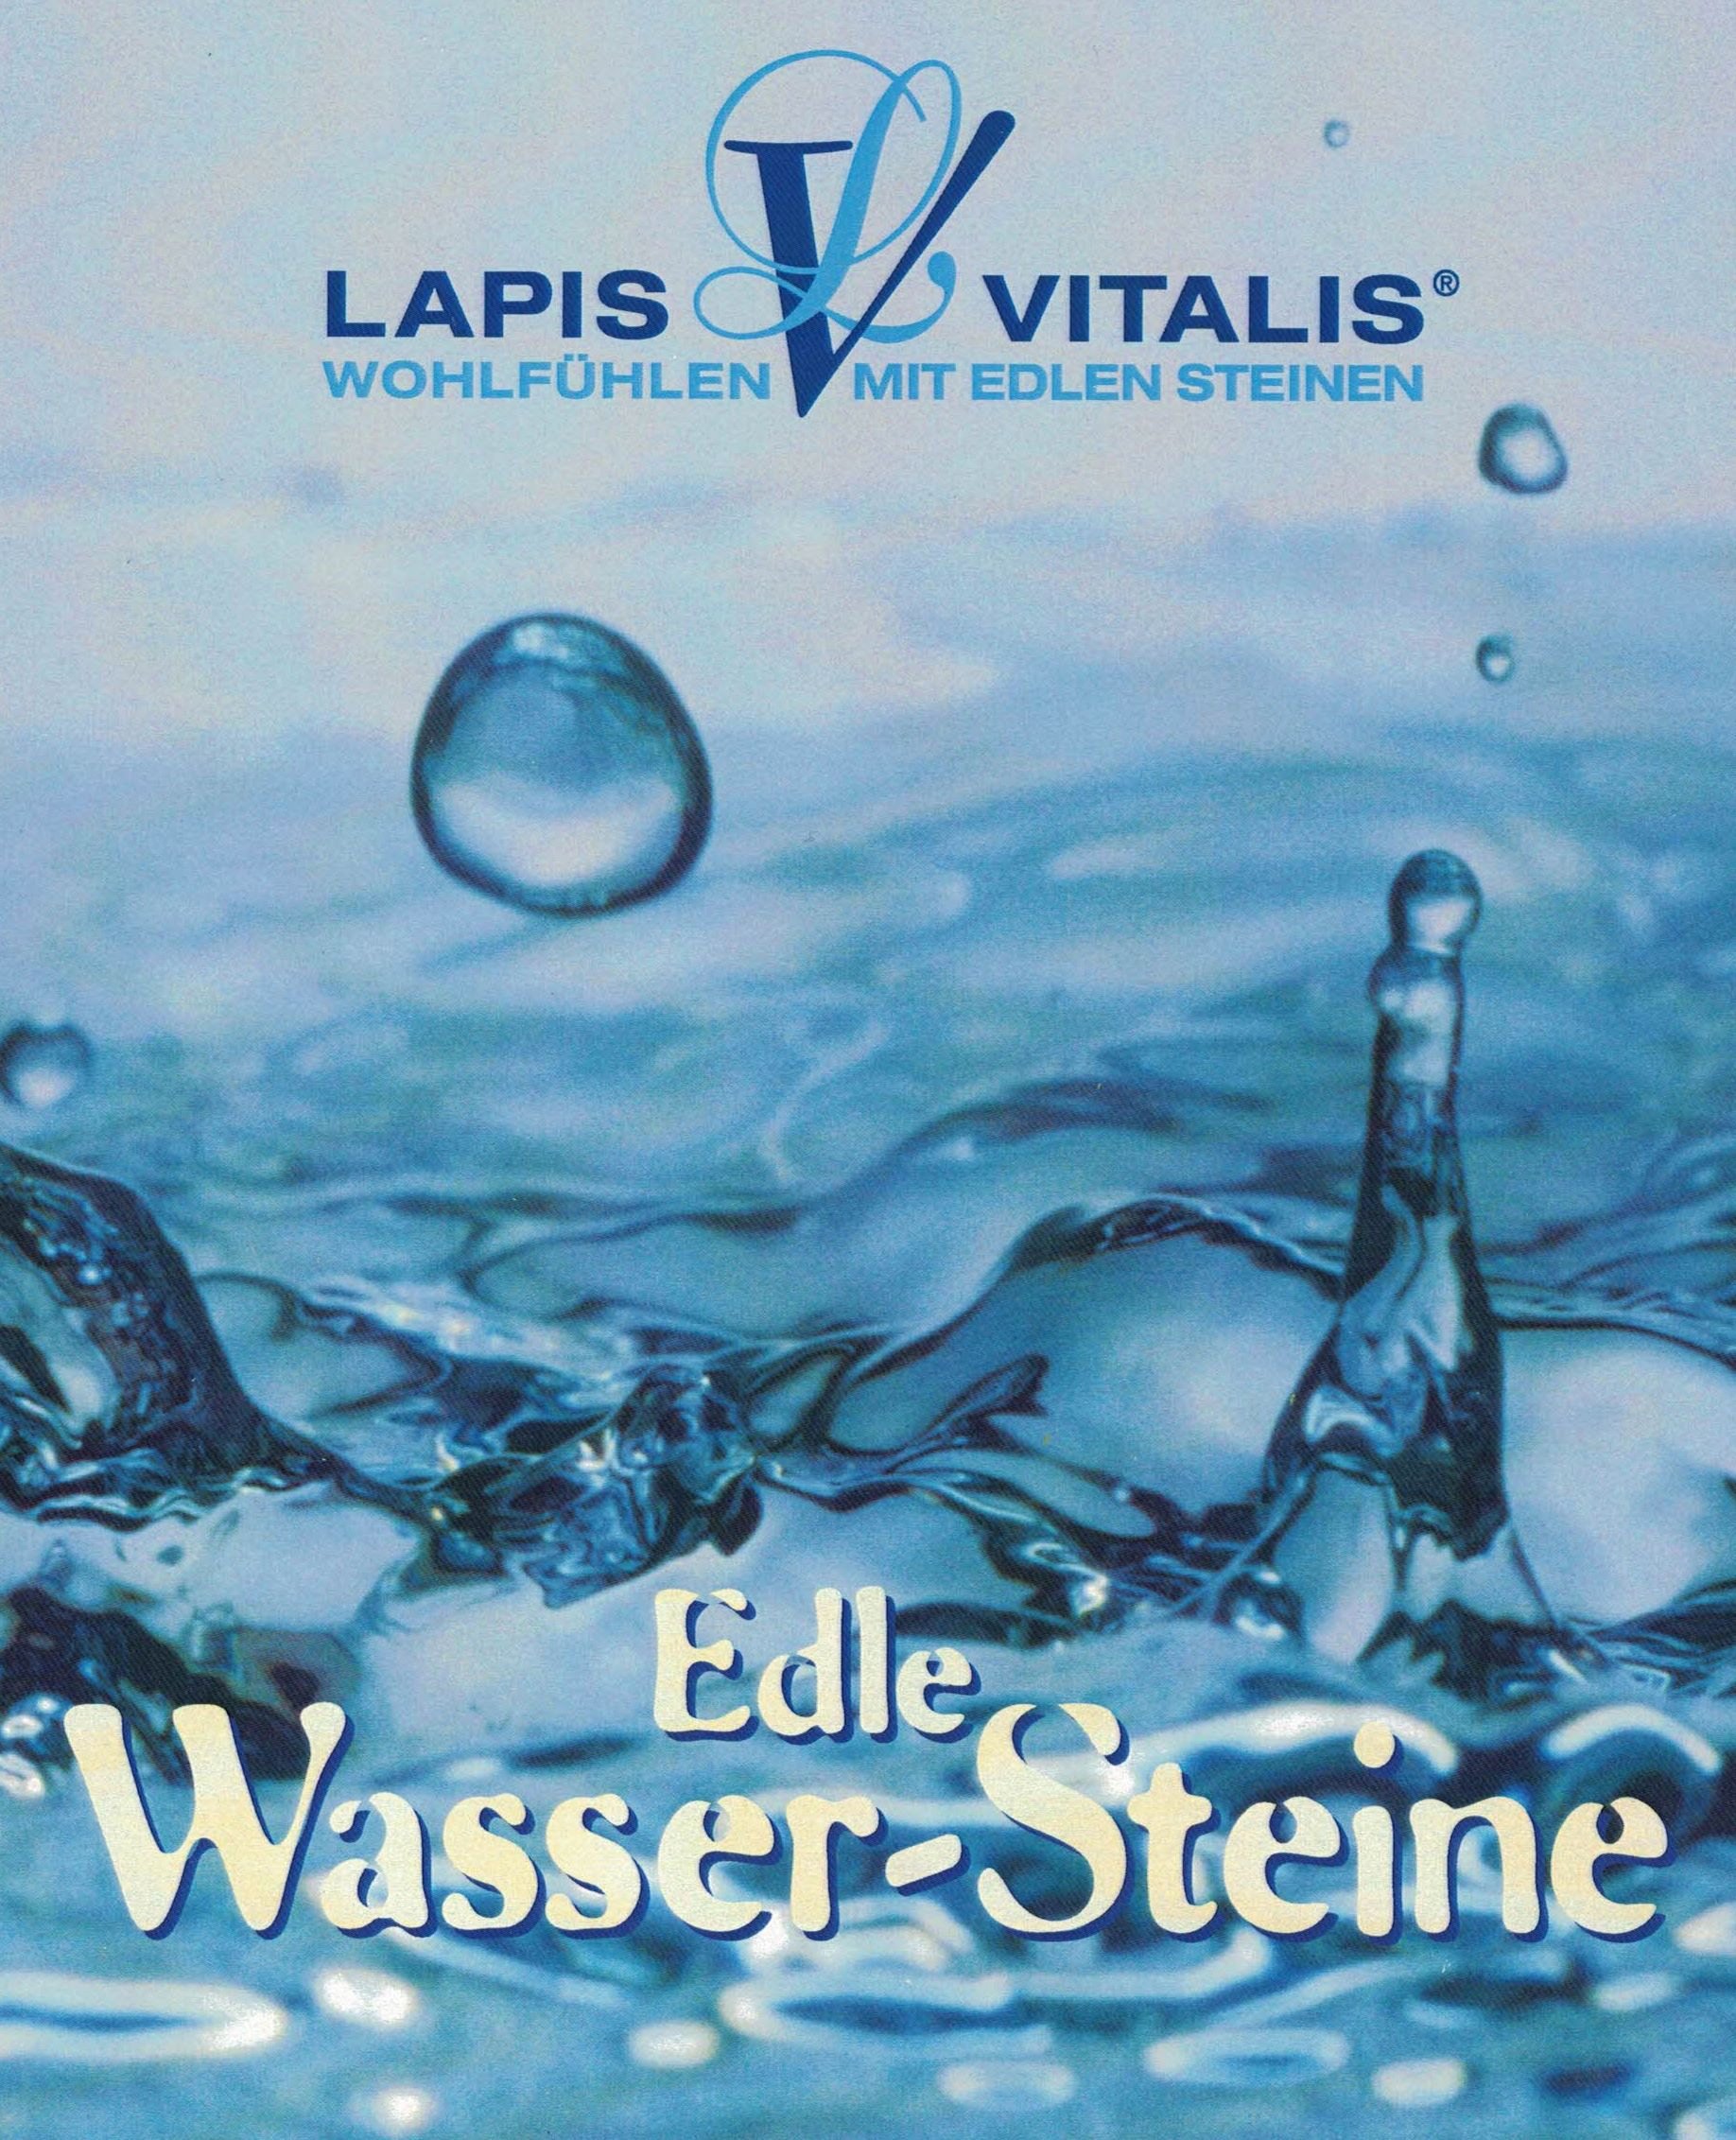 Edelstein Wasser mit Geschenkdose - Zur Ruhe Kommen Lapis Vitalis®